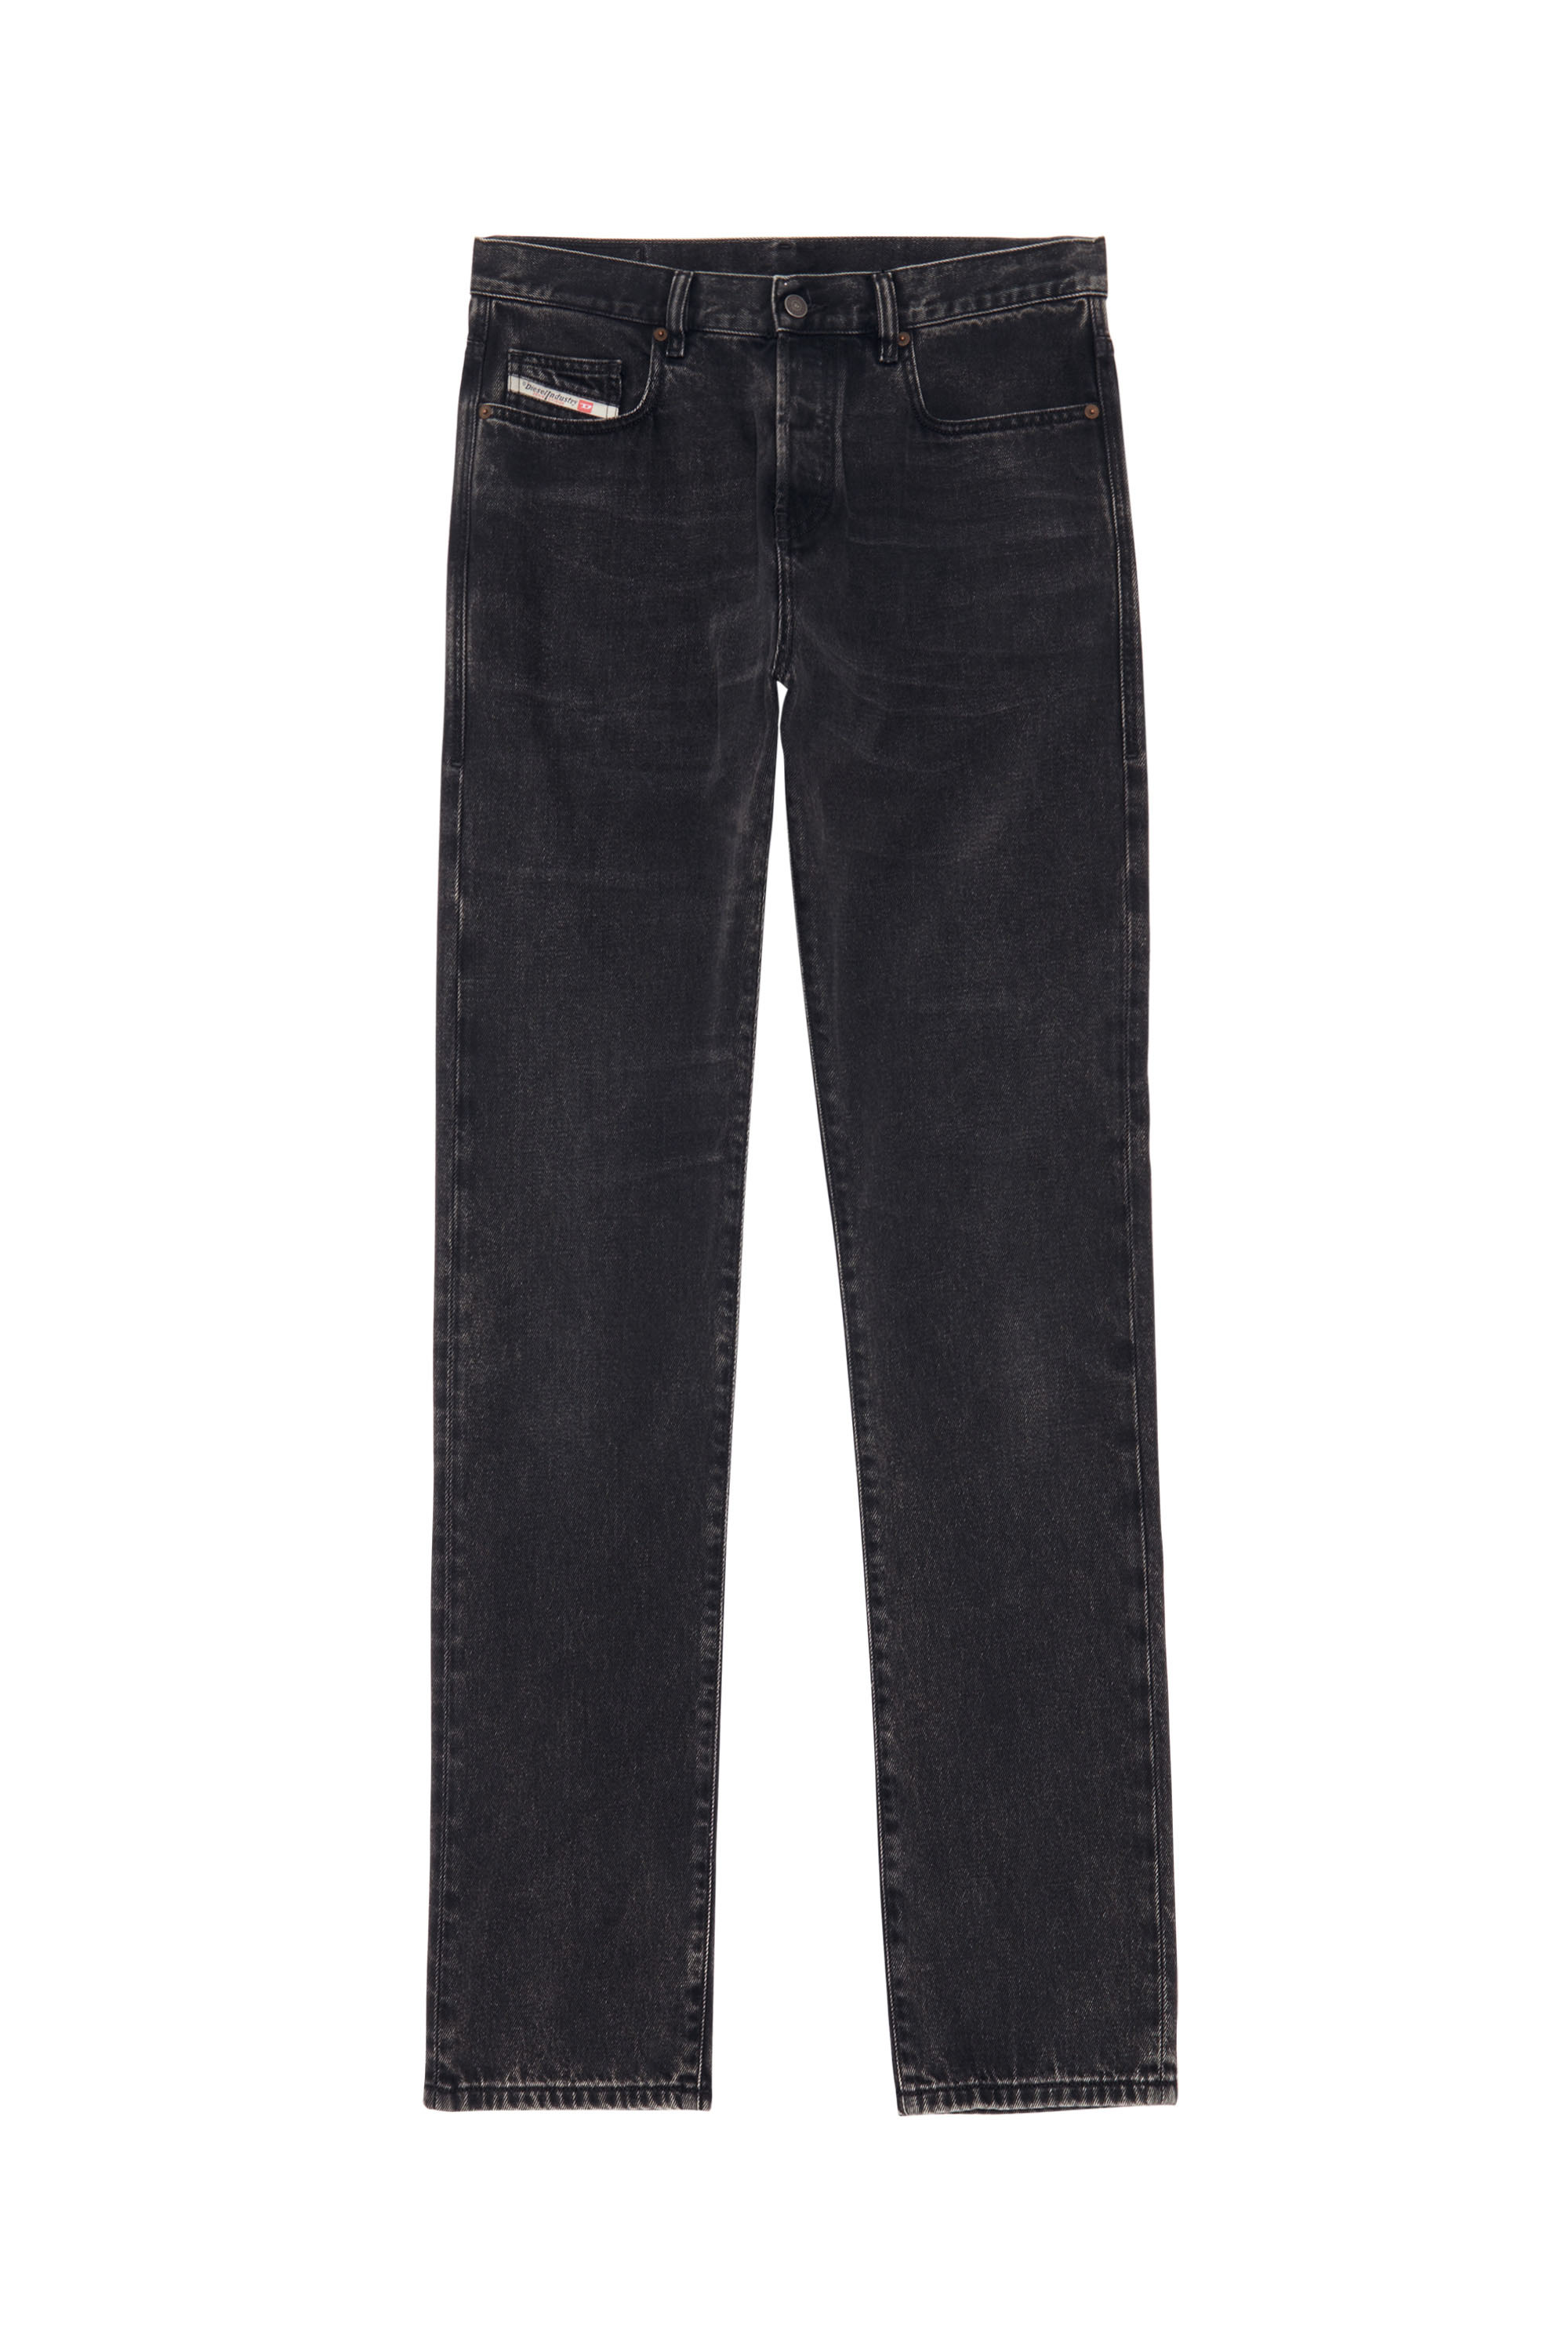 2015 BABHILA Z870G Skinny Jeans, Schwarz/Dunkelgrau - Jeans